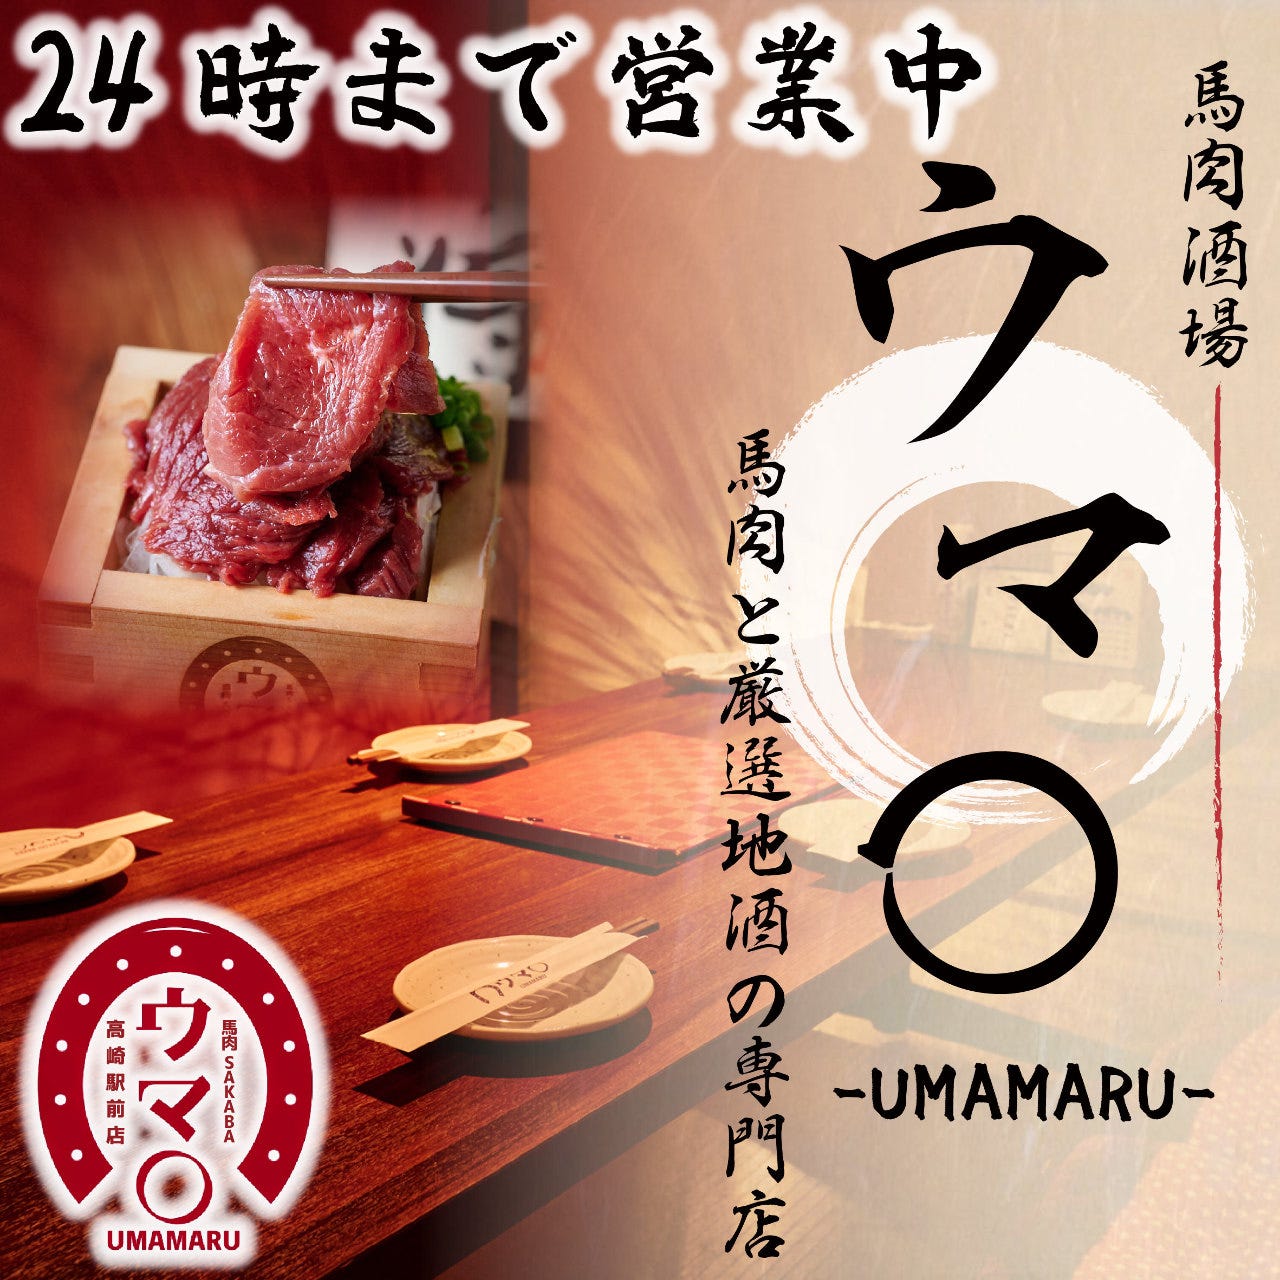 日本の酒と馬の肉 ウマ○ 高崎駅前店のURL1